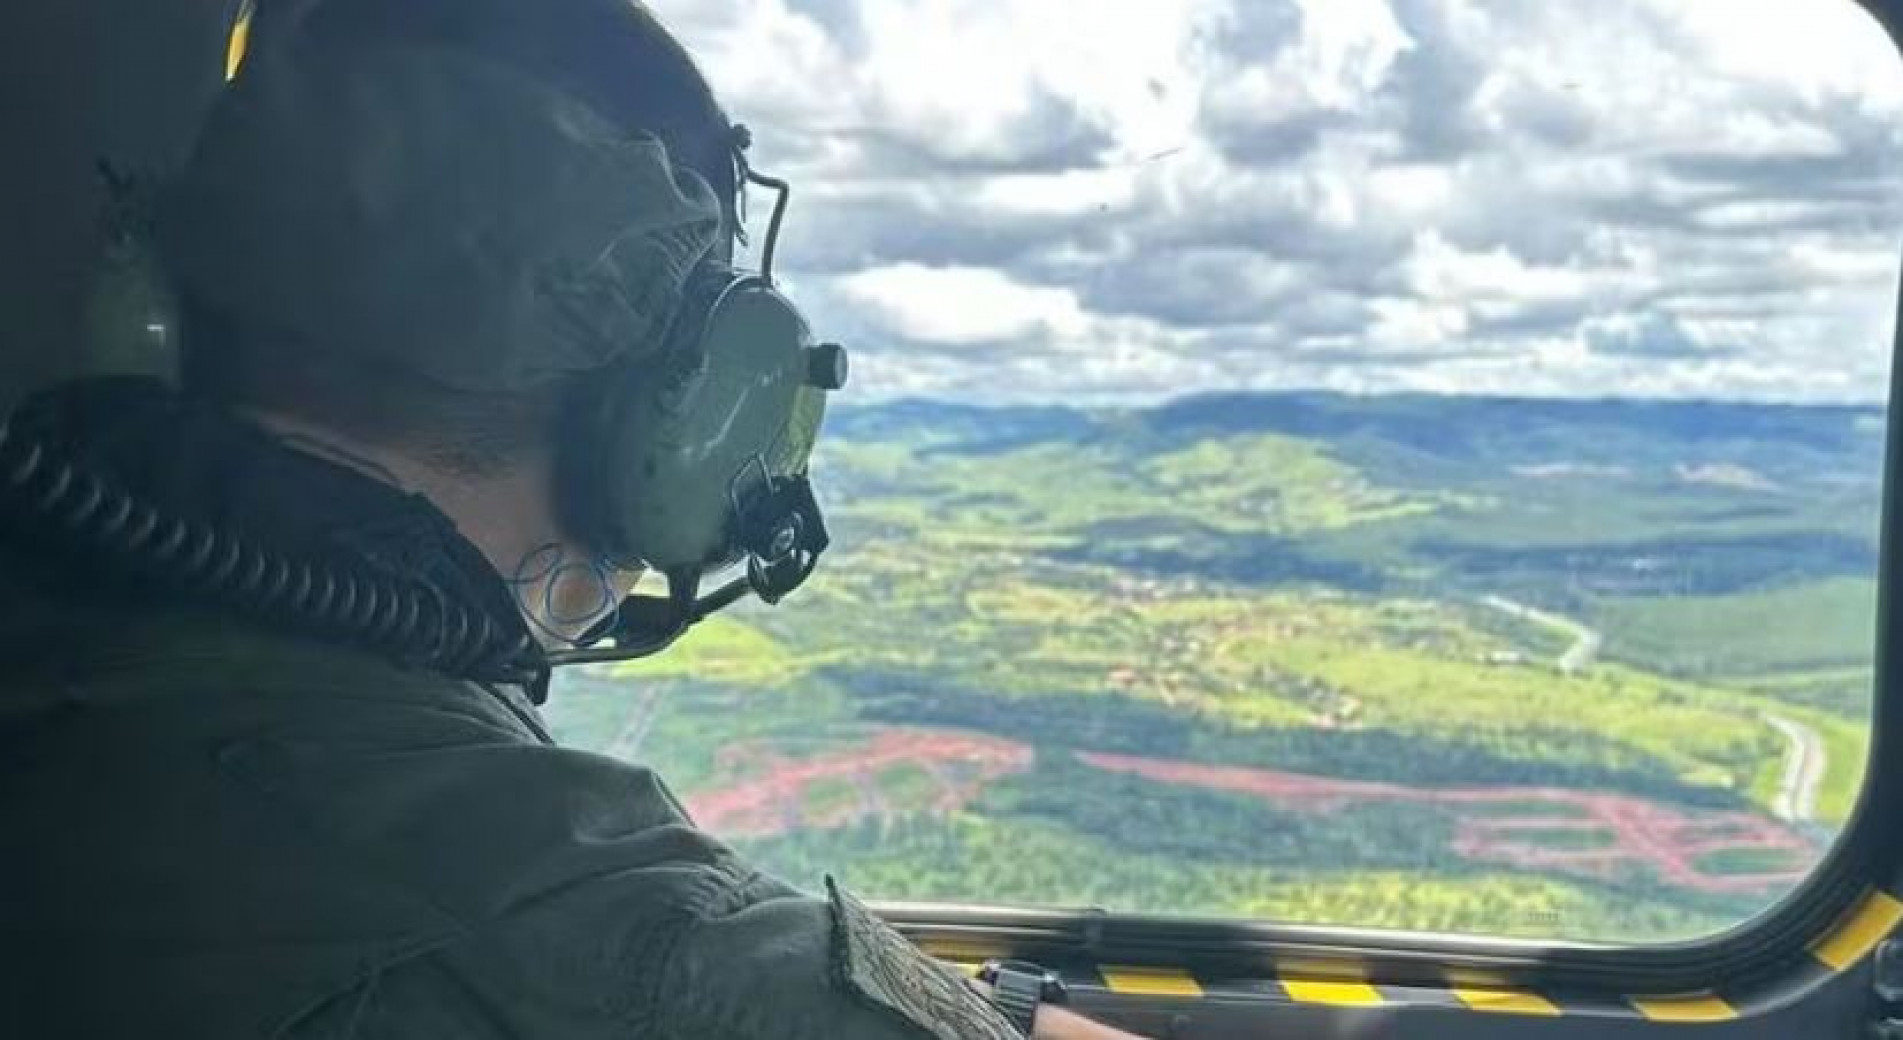 Buscas Por Helicóptero Desaparecido No Litoral De São Paulo Entram No Sexto Dia 